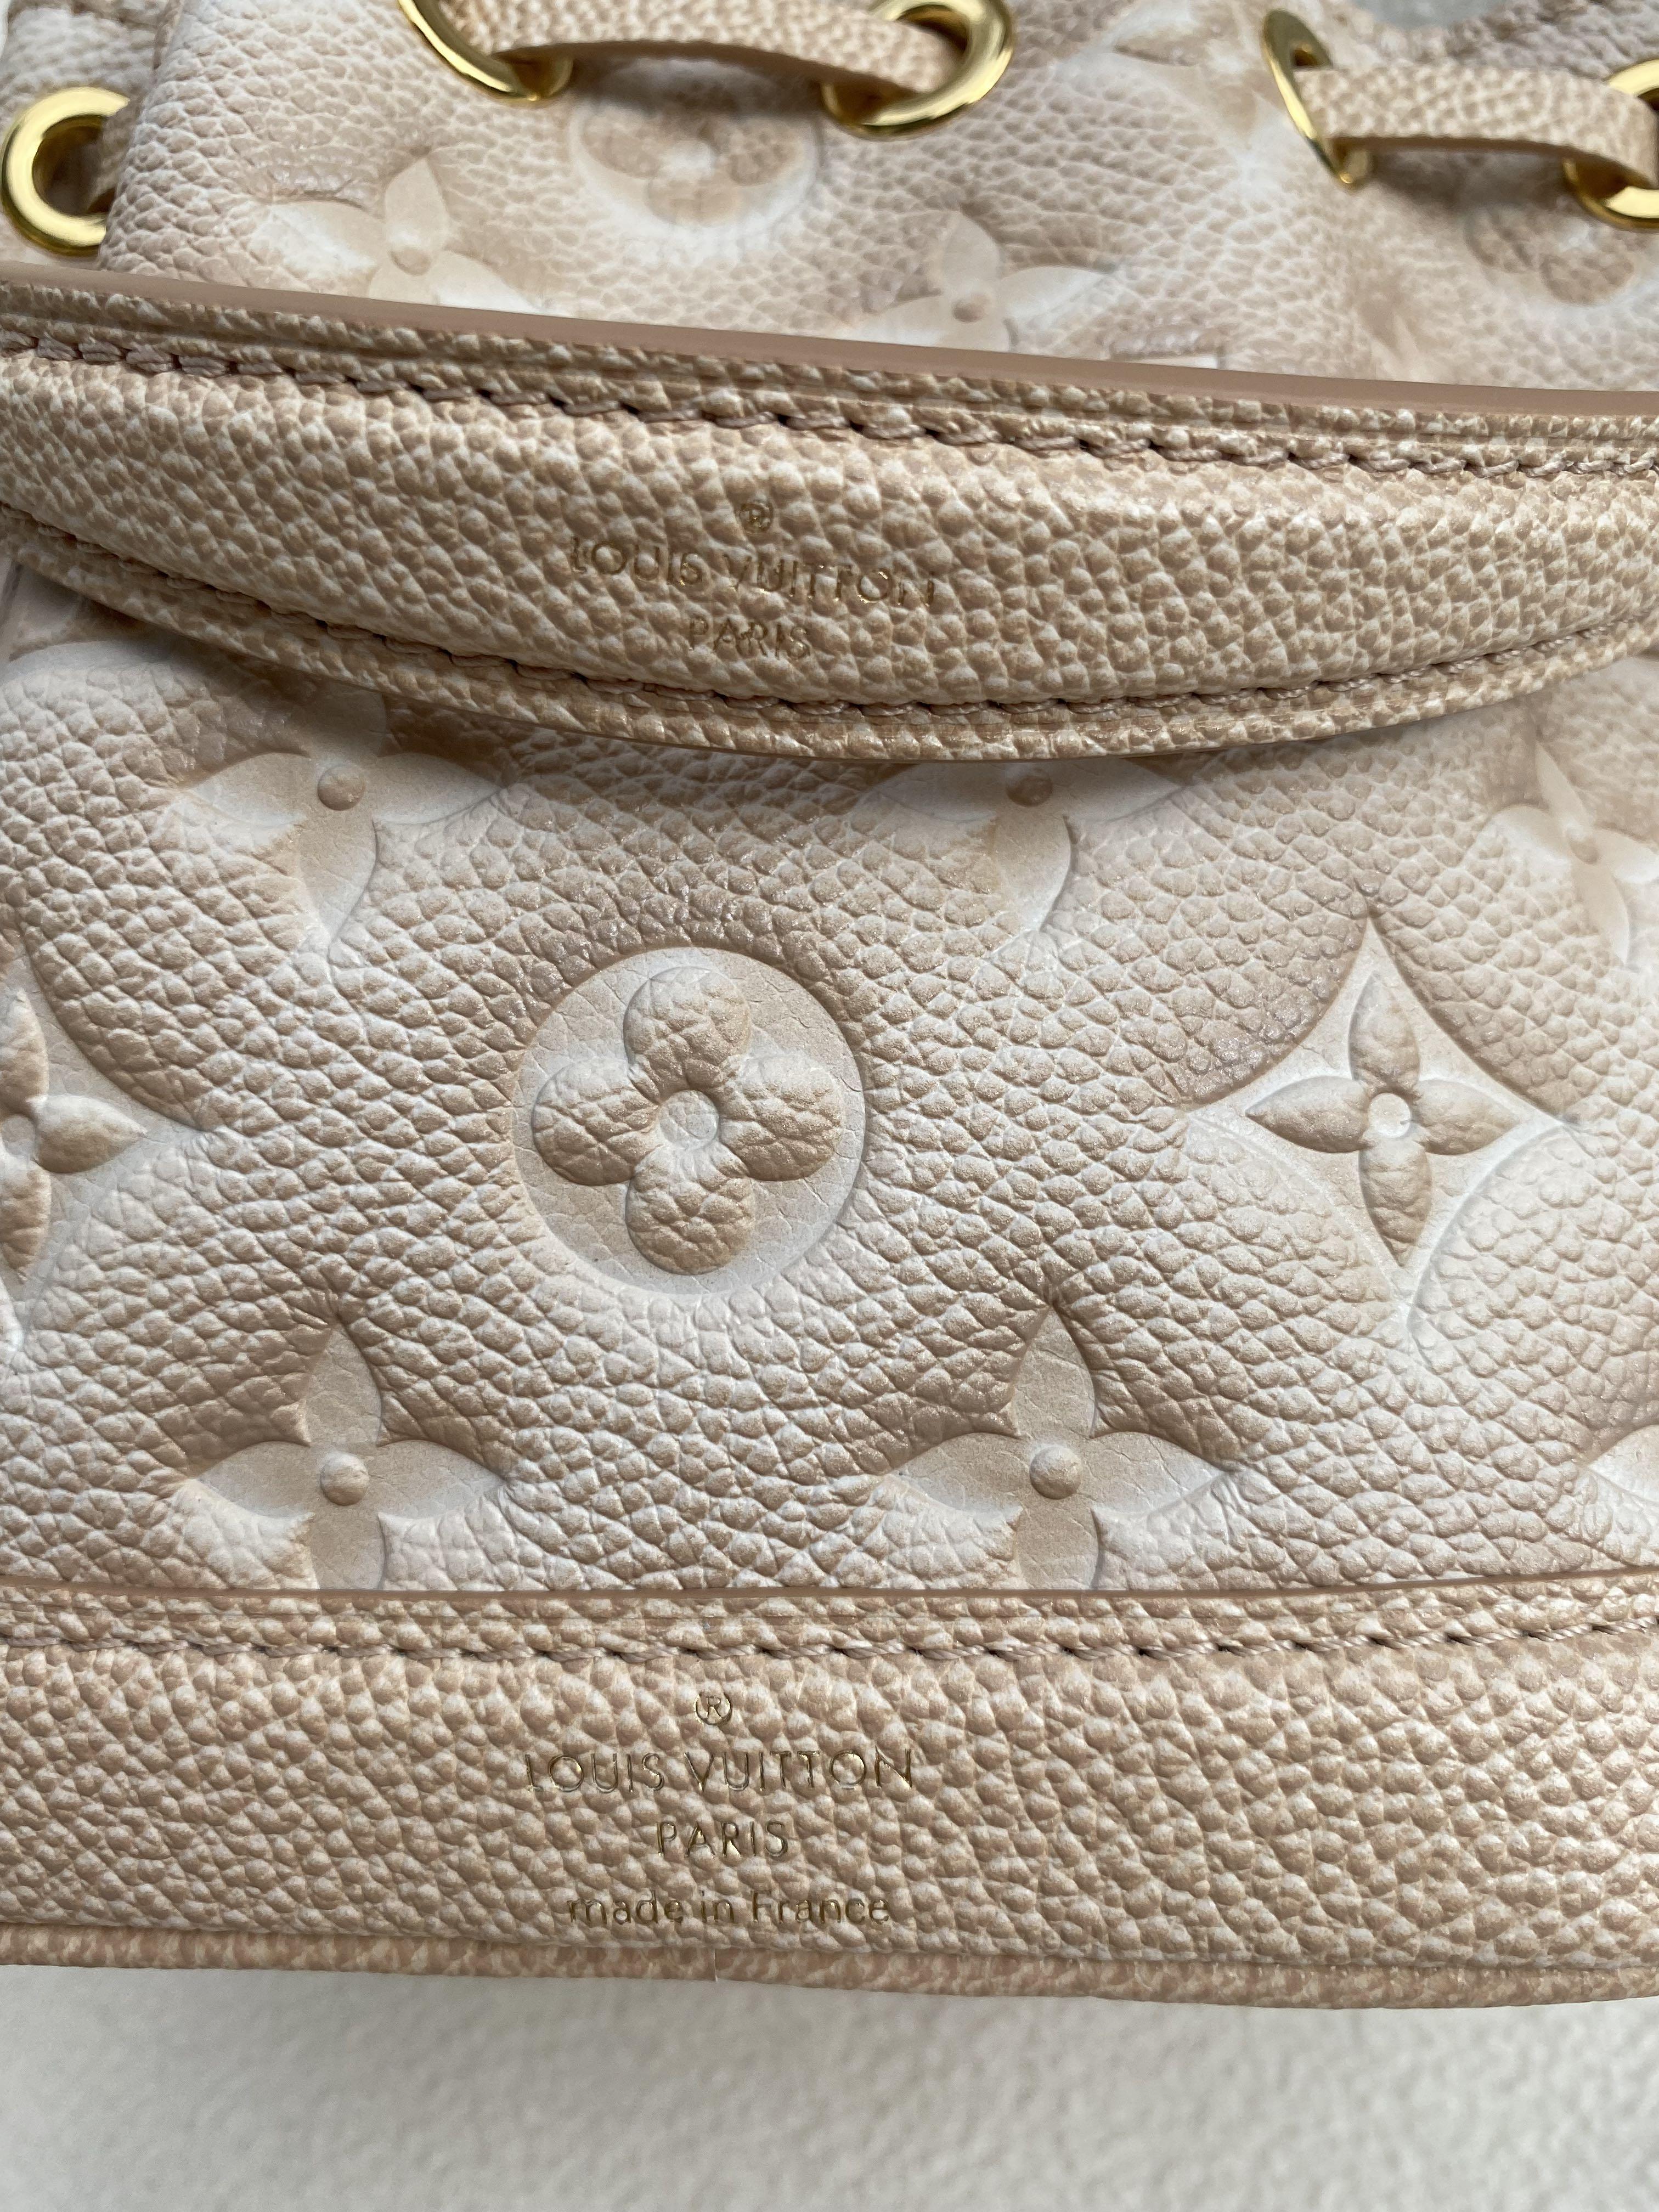 SOLD] ☆BN Louis Vuitton Stardust Nano Noe Beige💫, Luxury, Bags & Wallets  on Carousell